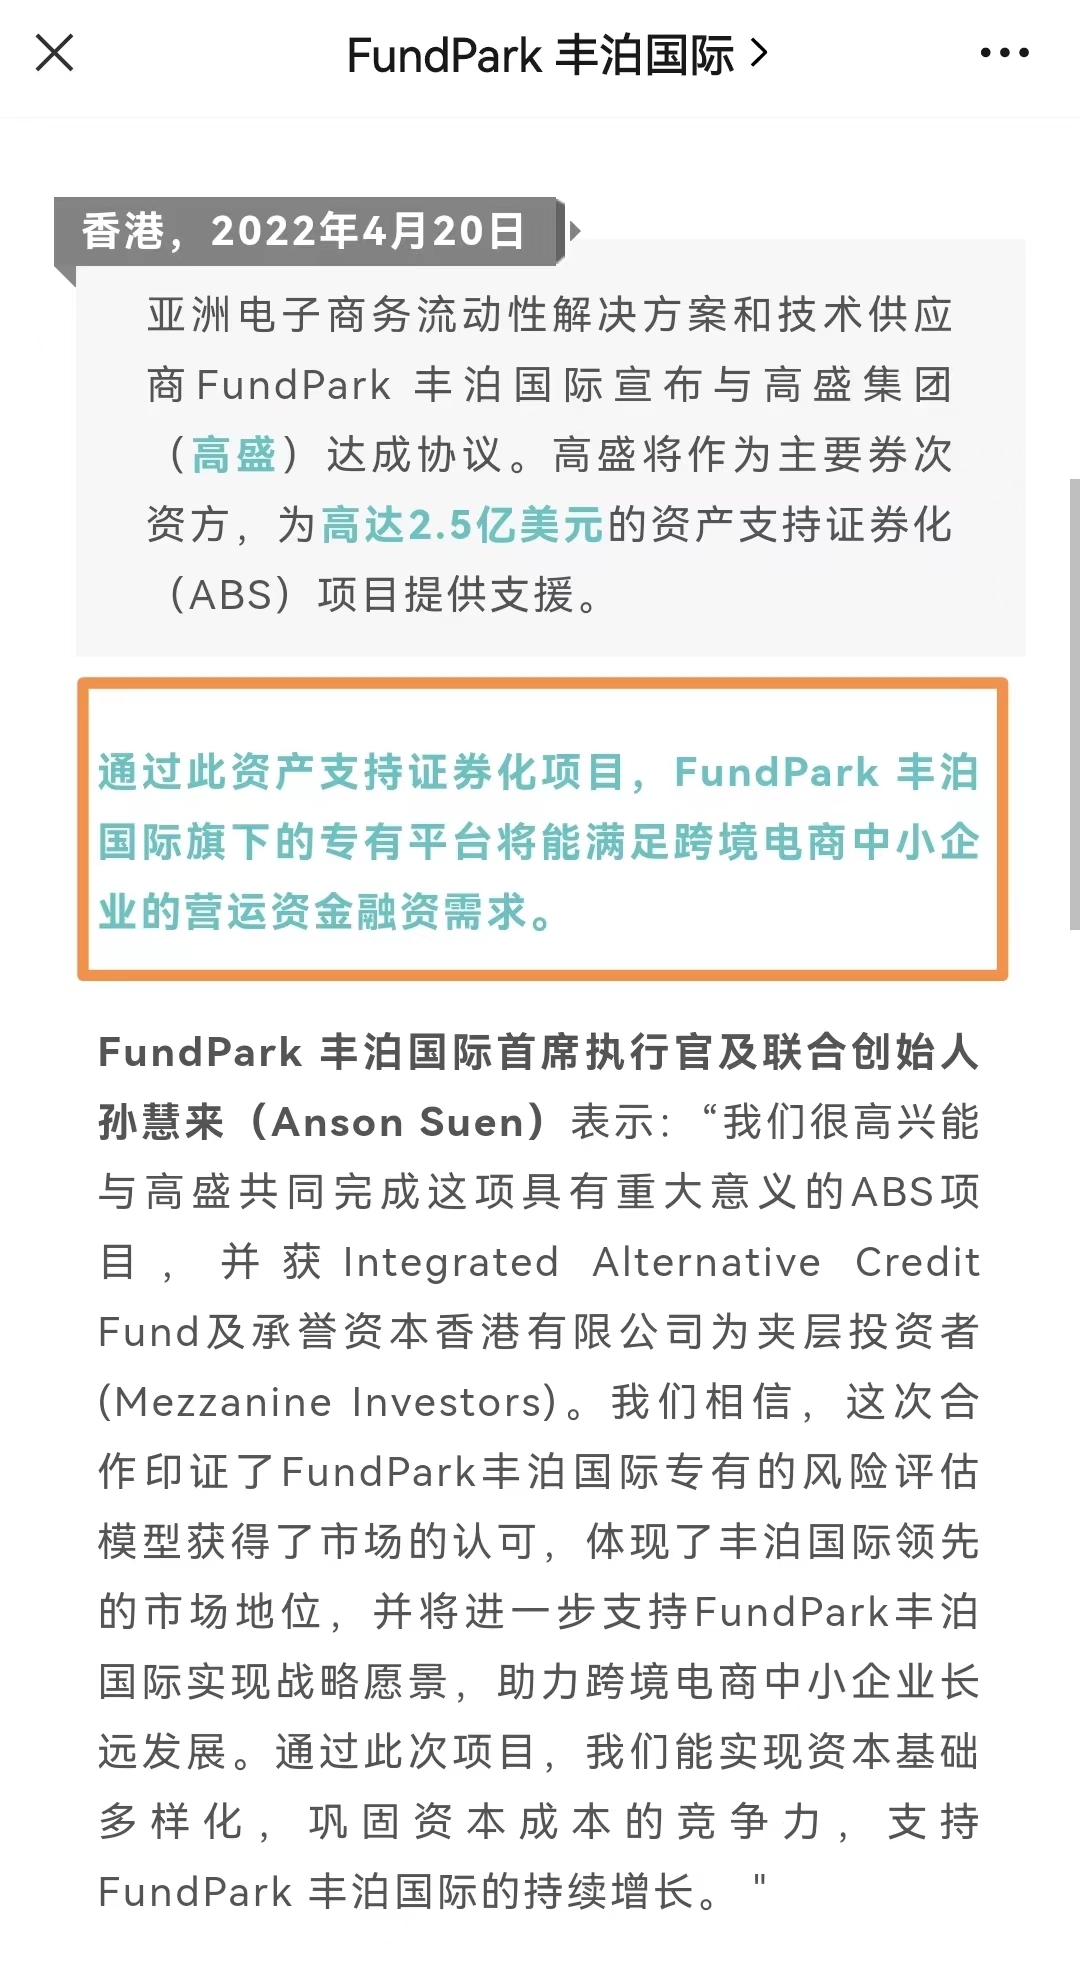 丰泊国际与连连国际达成独家合作 推出全新融资方案